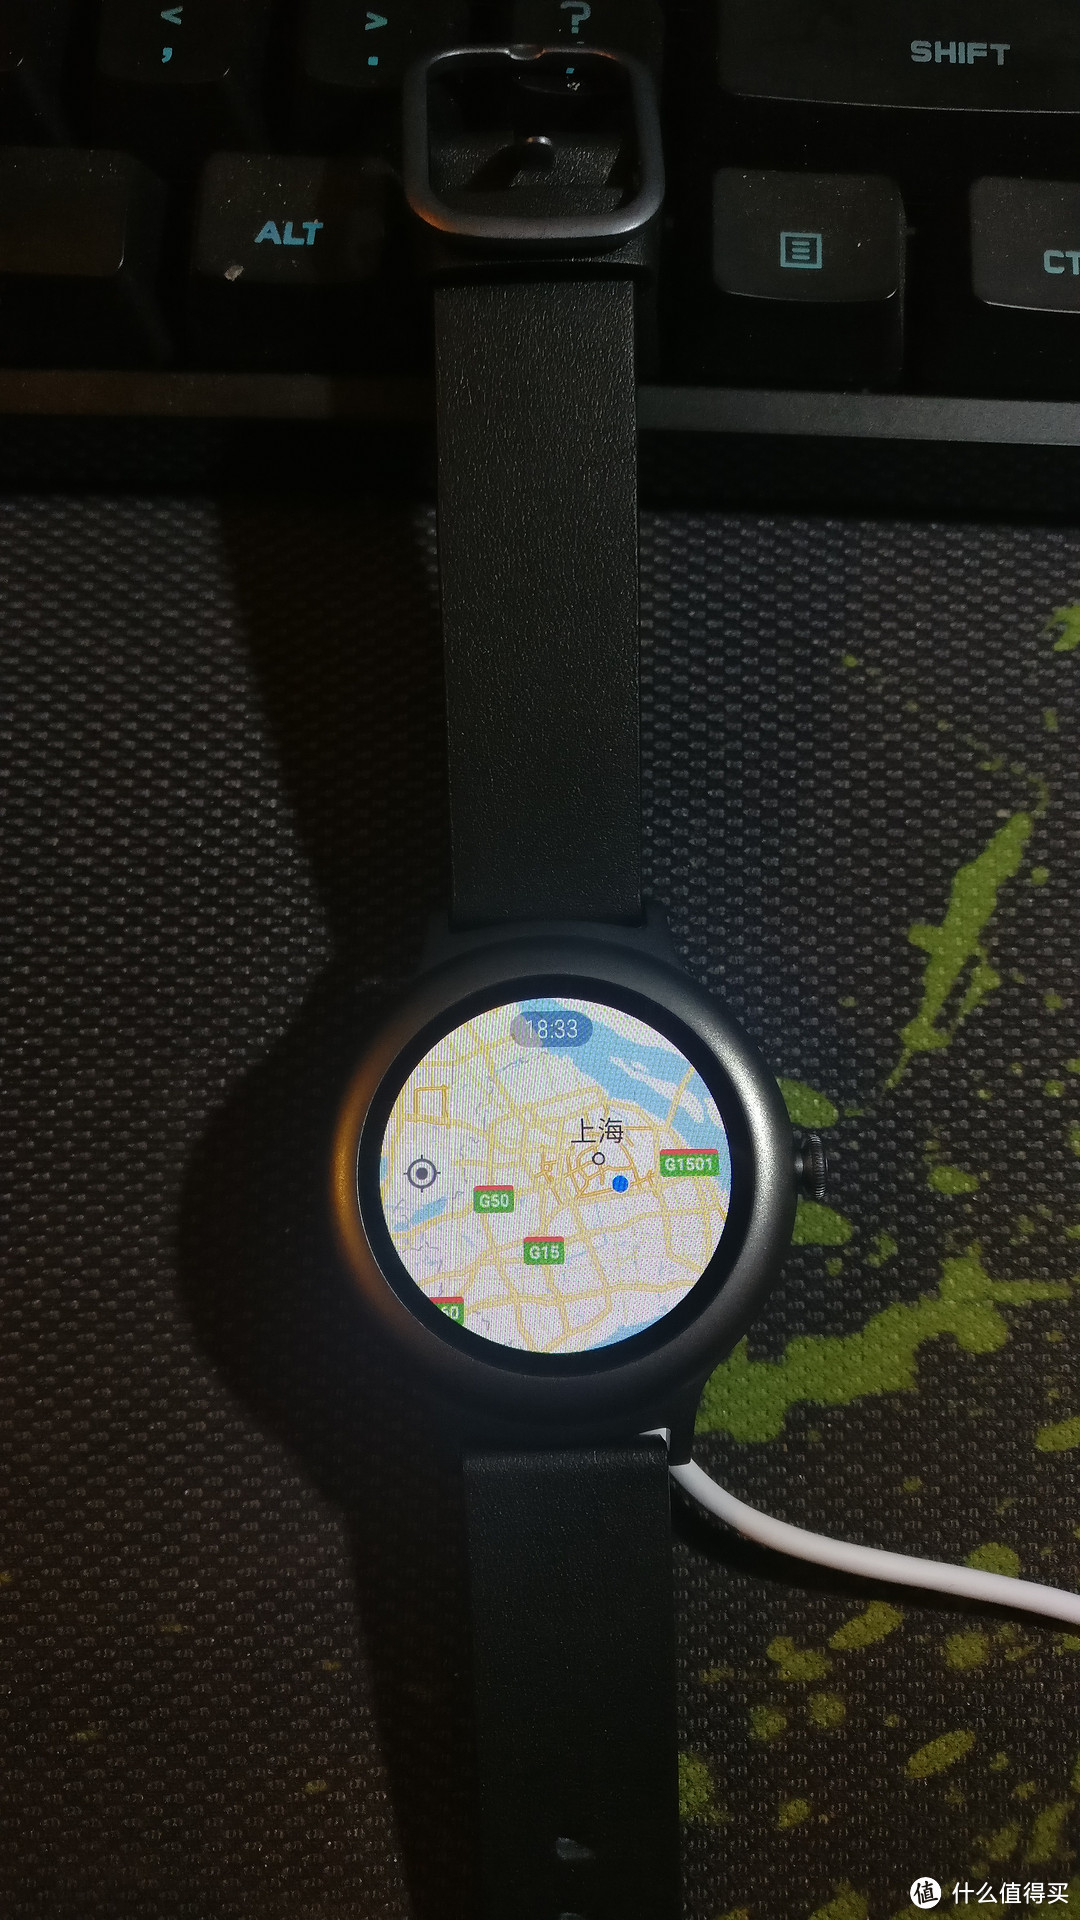 #本站首晒#LG Watch Style 钛色 智能手表 开箱试用